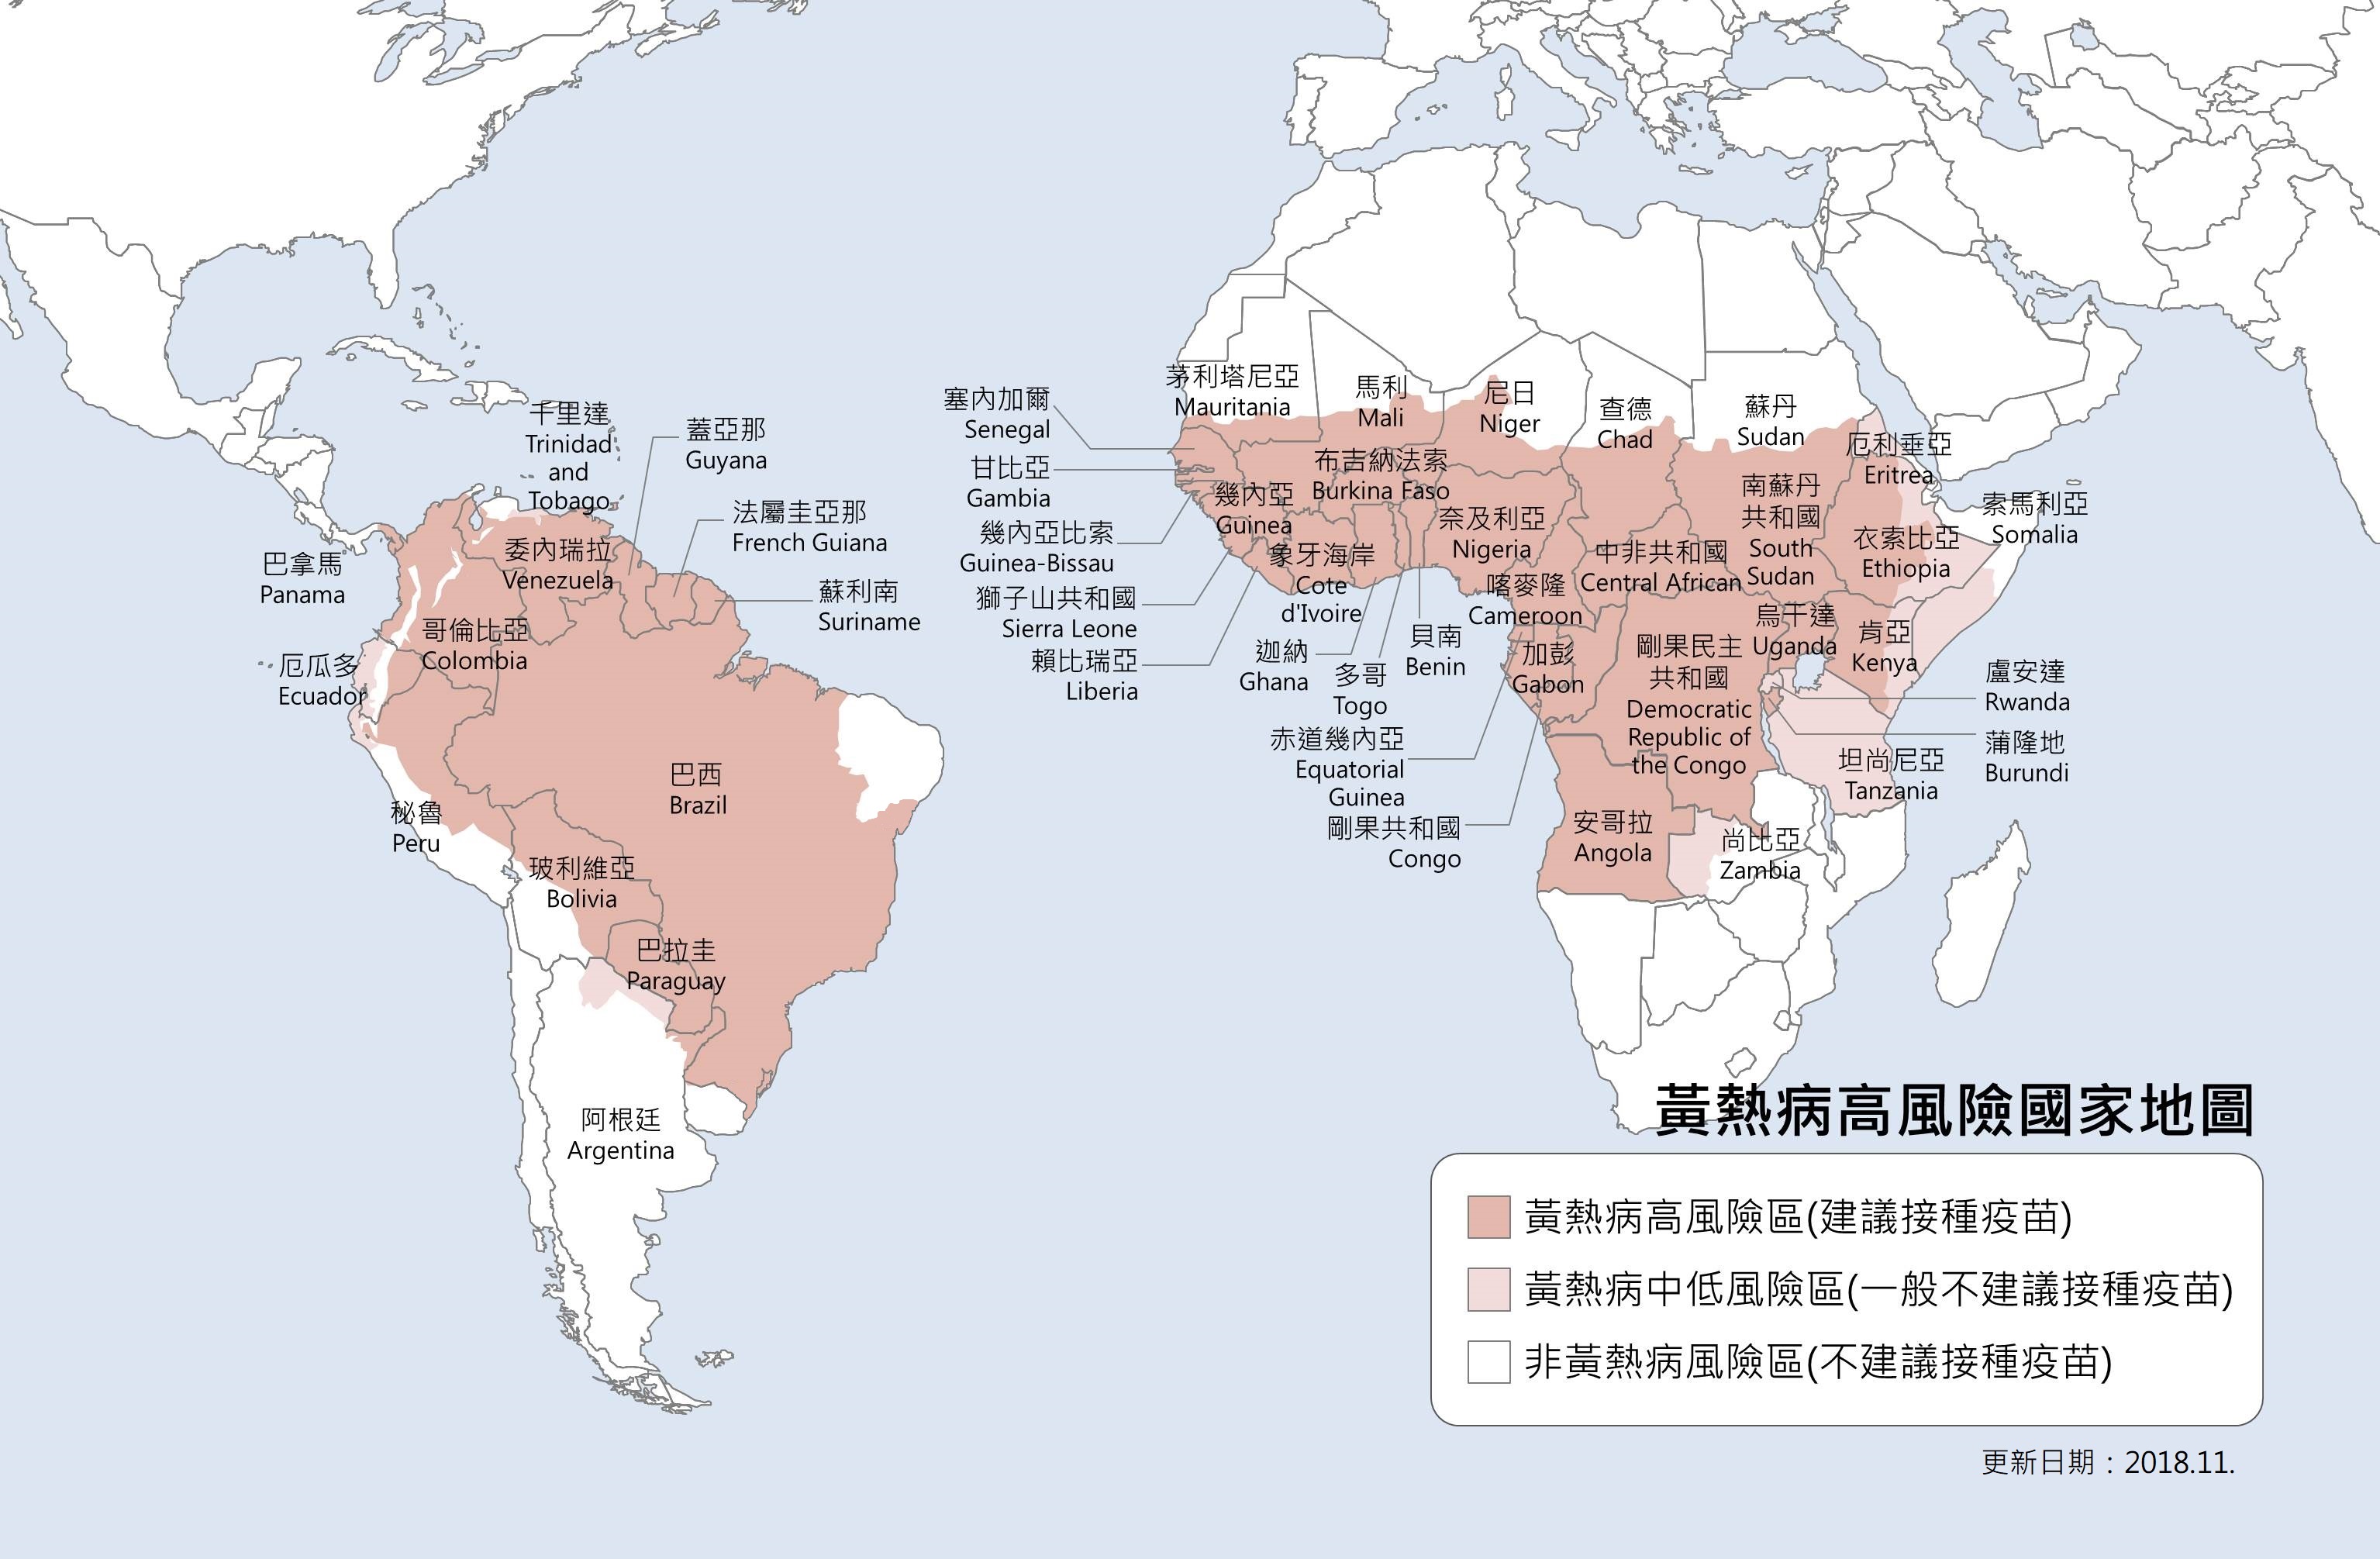 黃熱病高風險國家地圖，說明如下